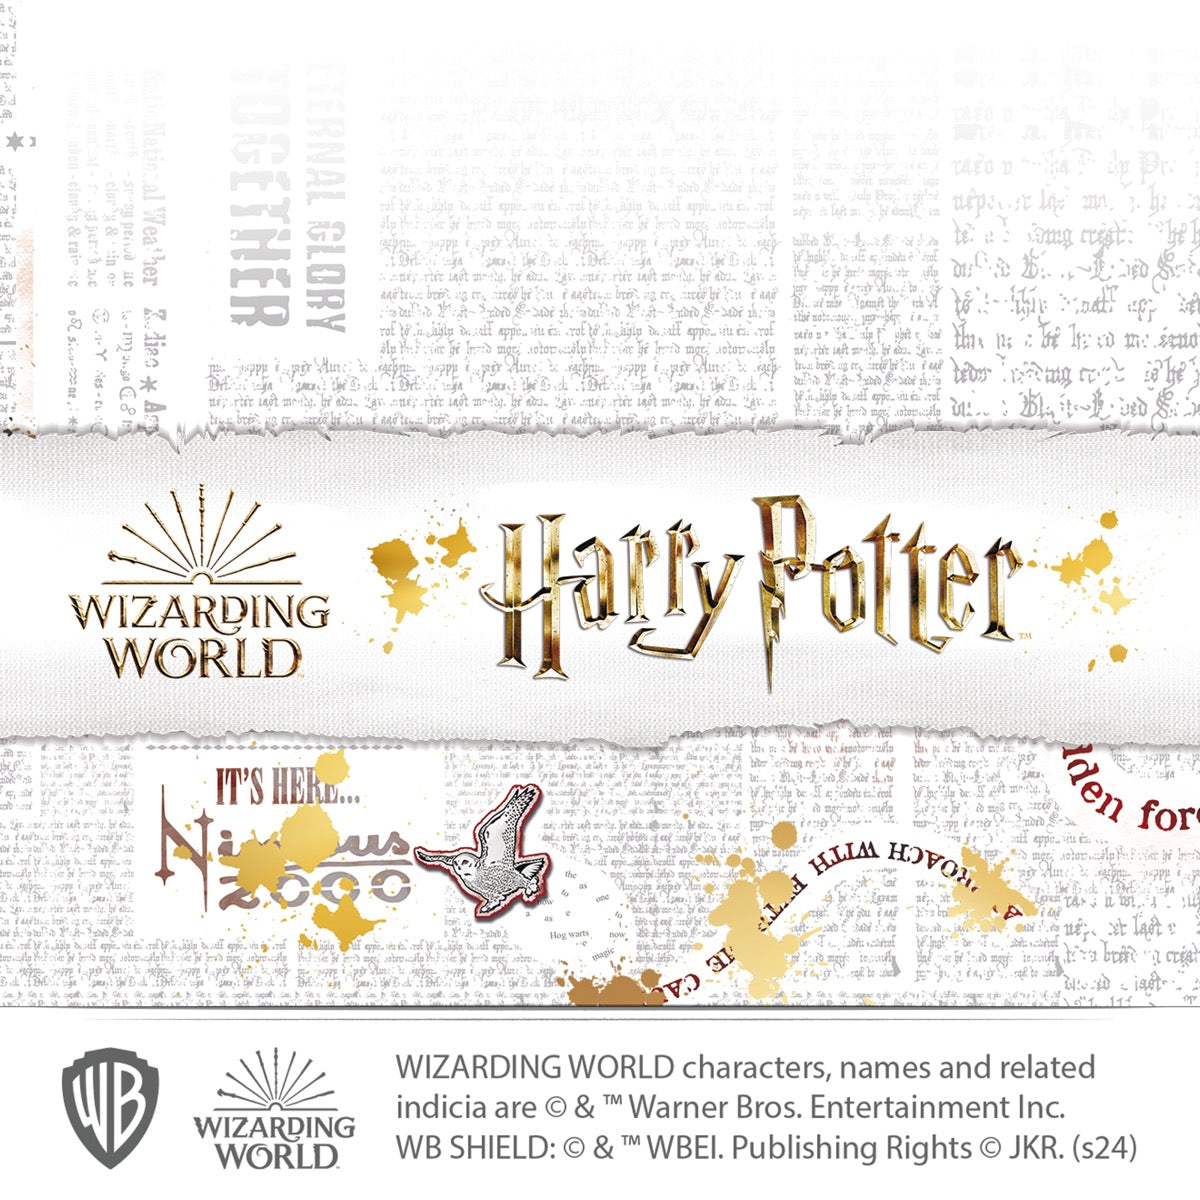 HARRY POTTER Wall Sticker - Hogwarts Crest Wall Decal Wizarding World Art